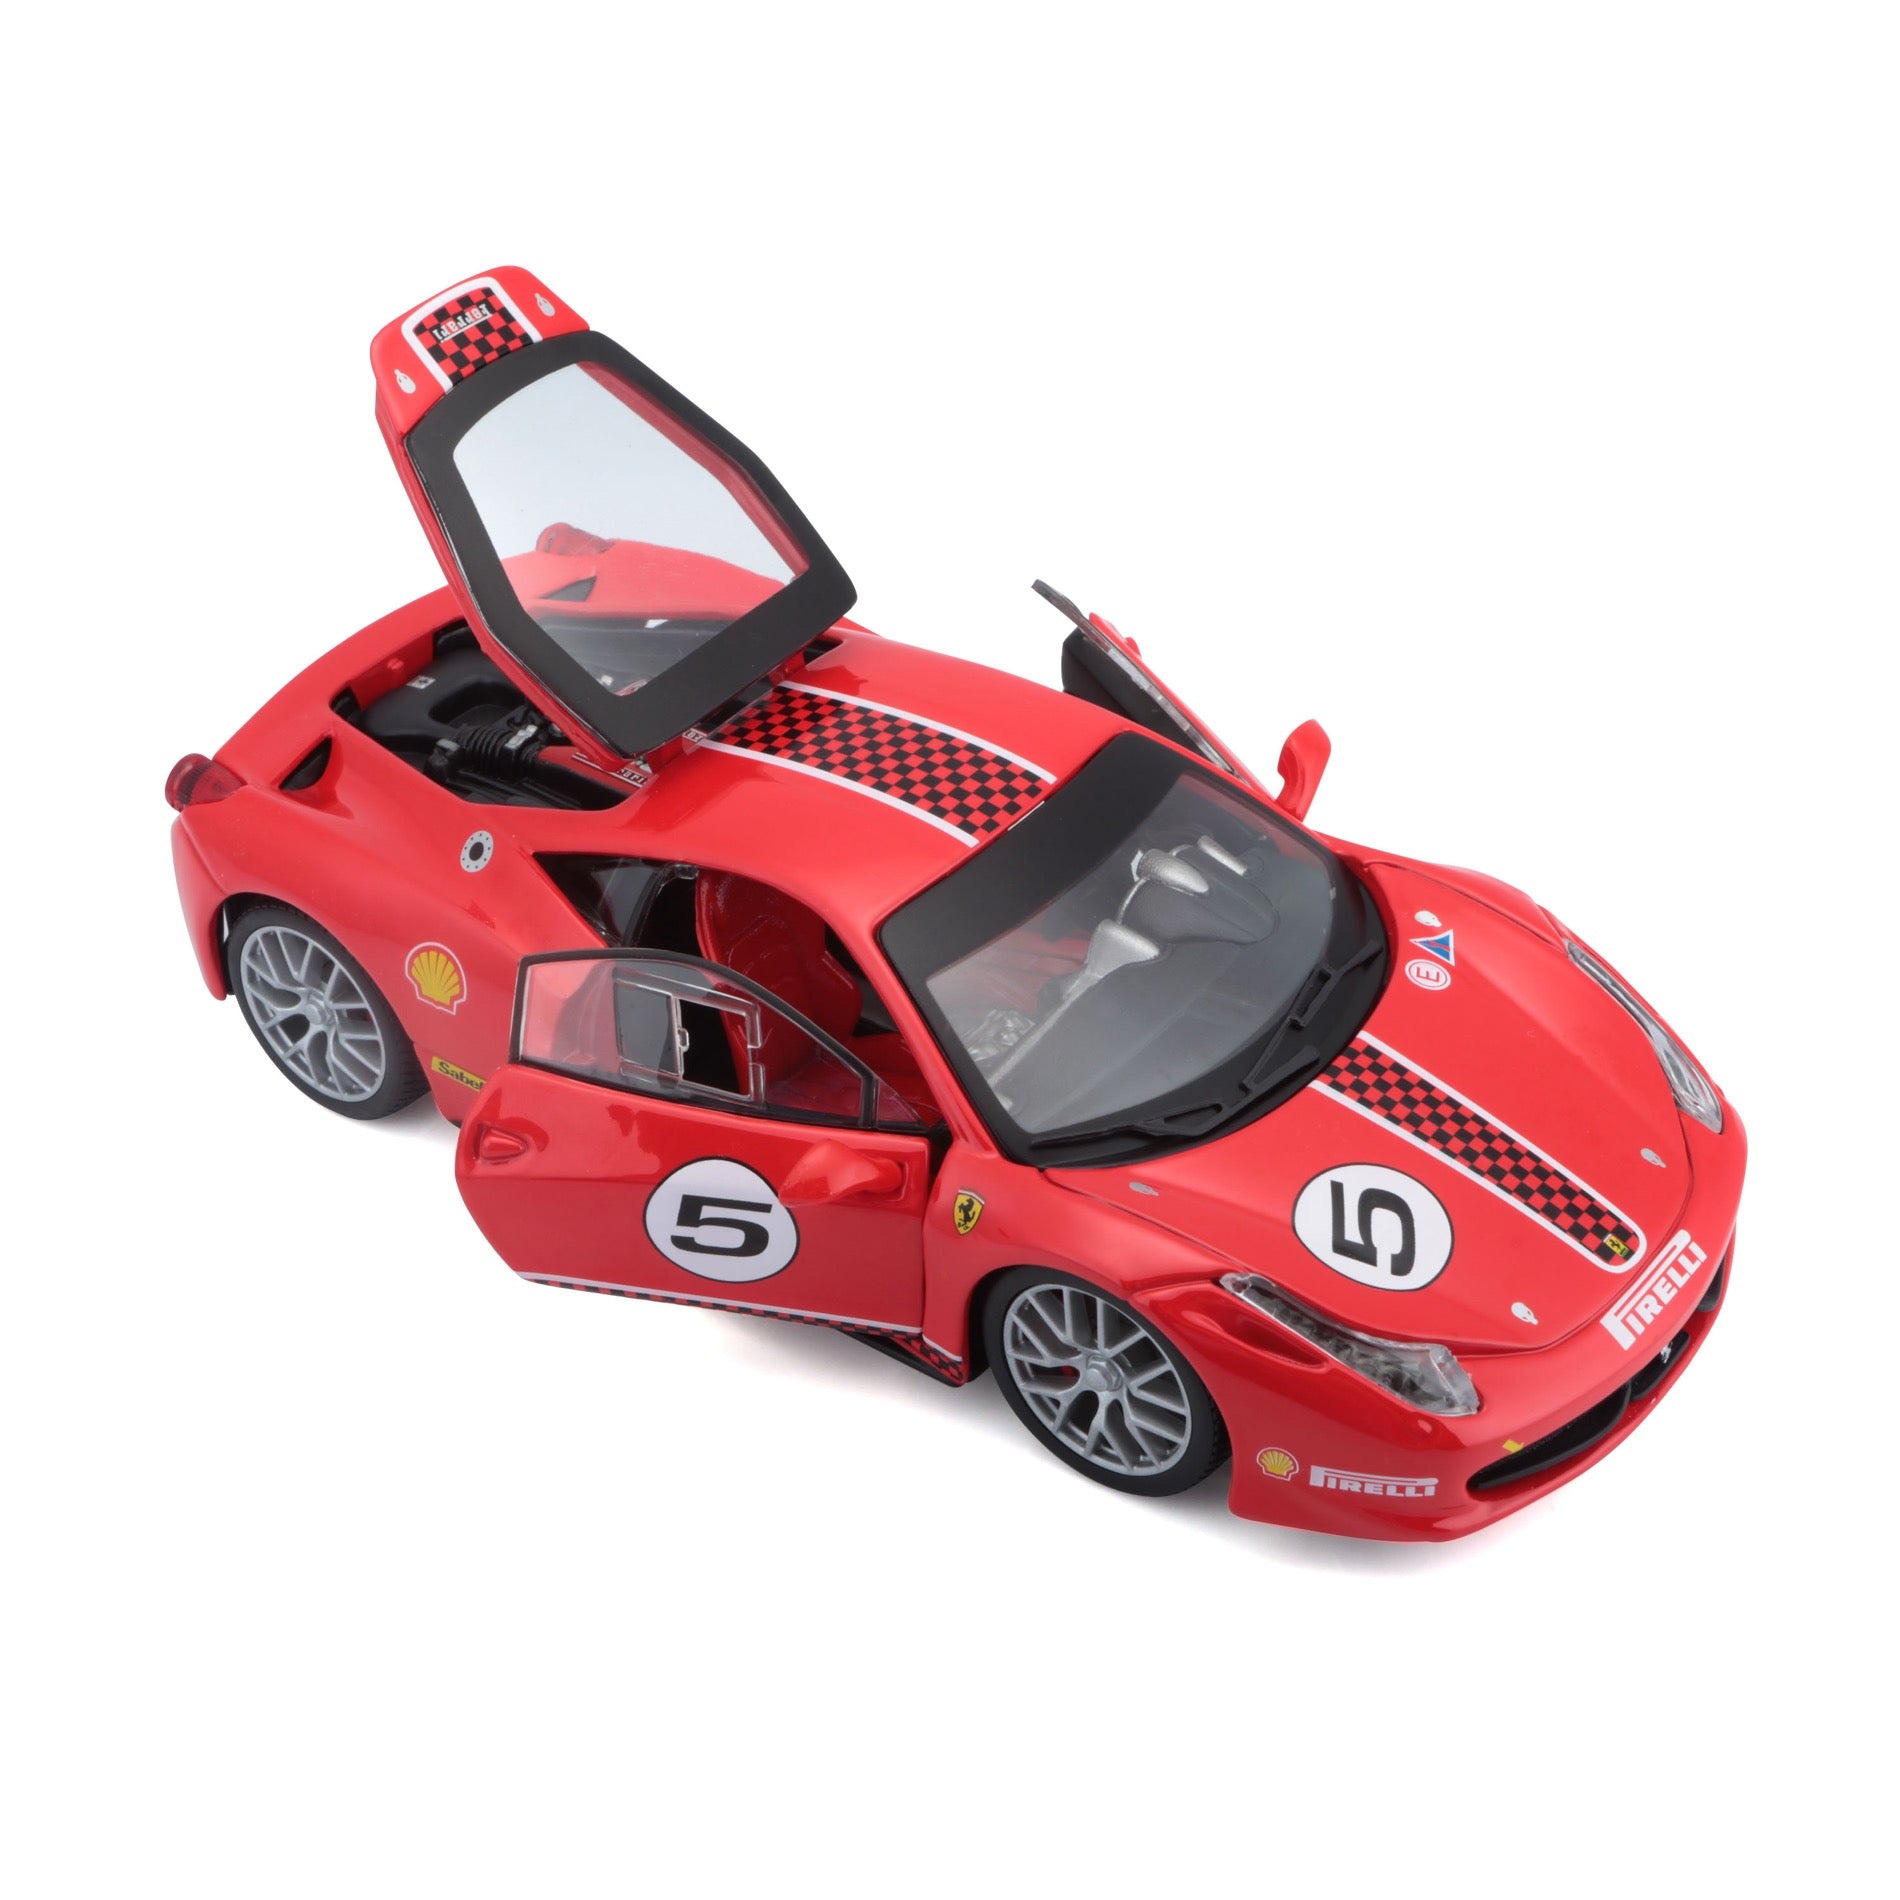 Bburago Ferrari Racing 1:24